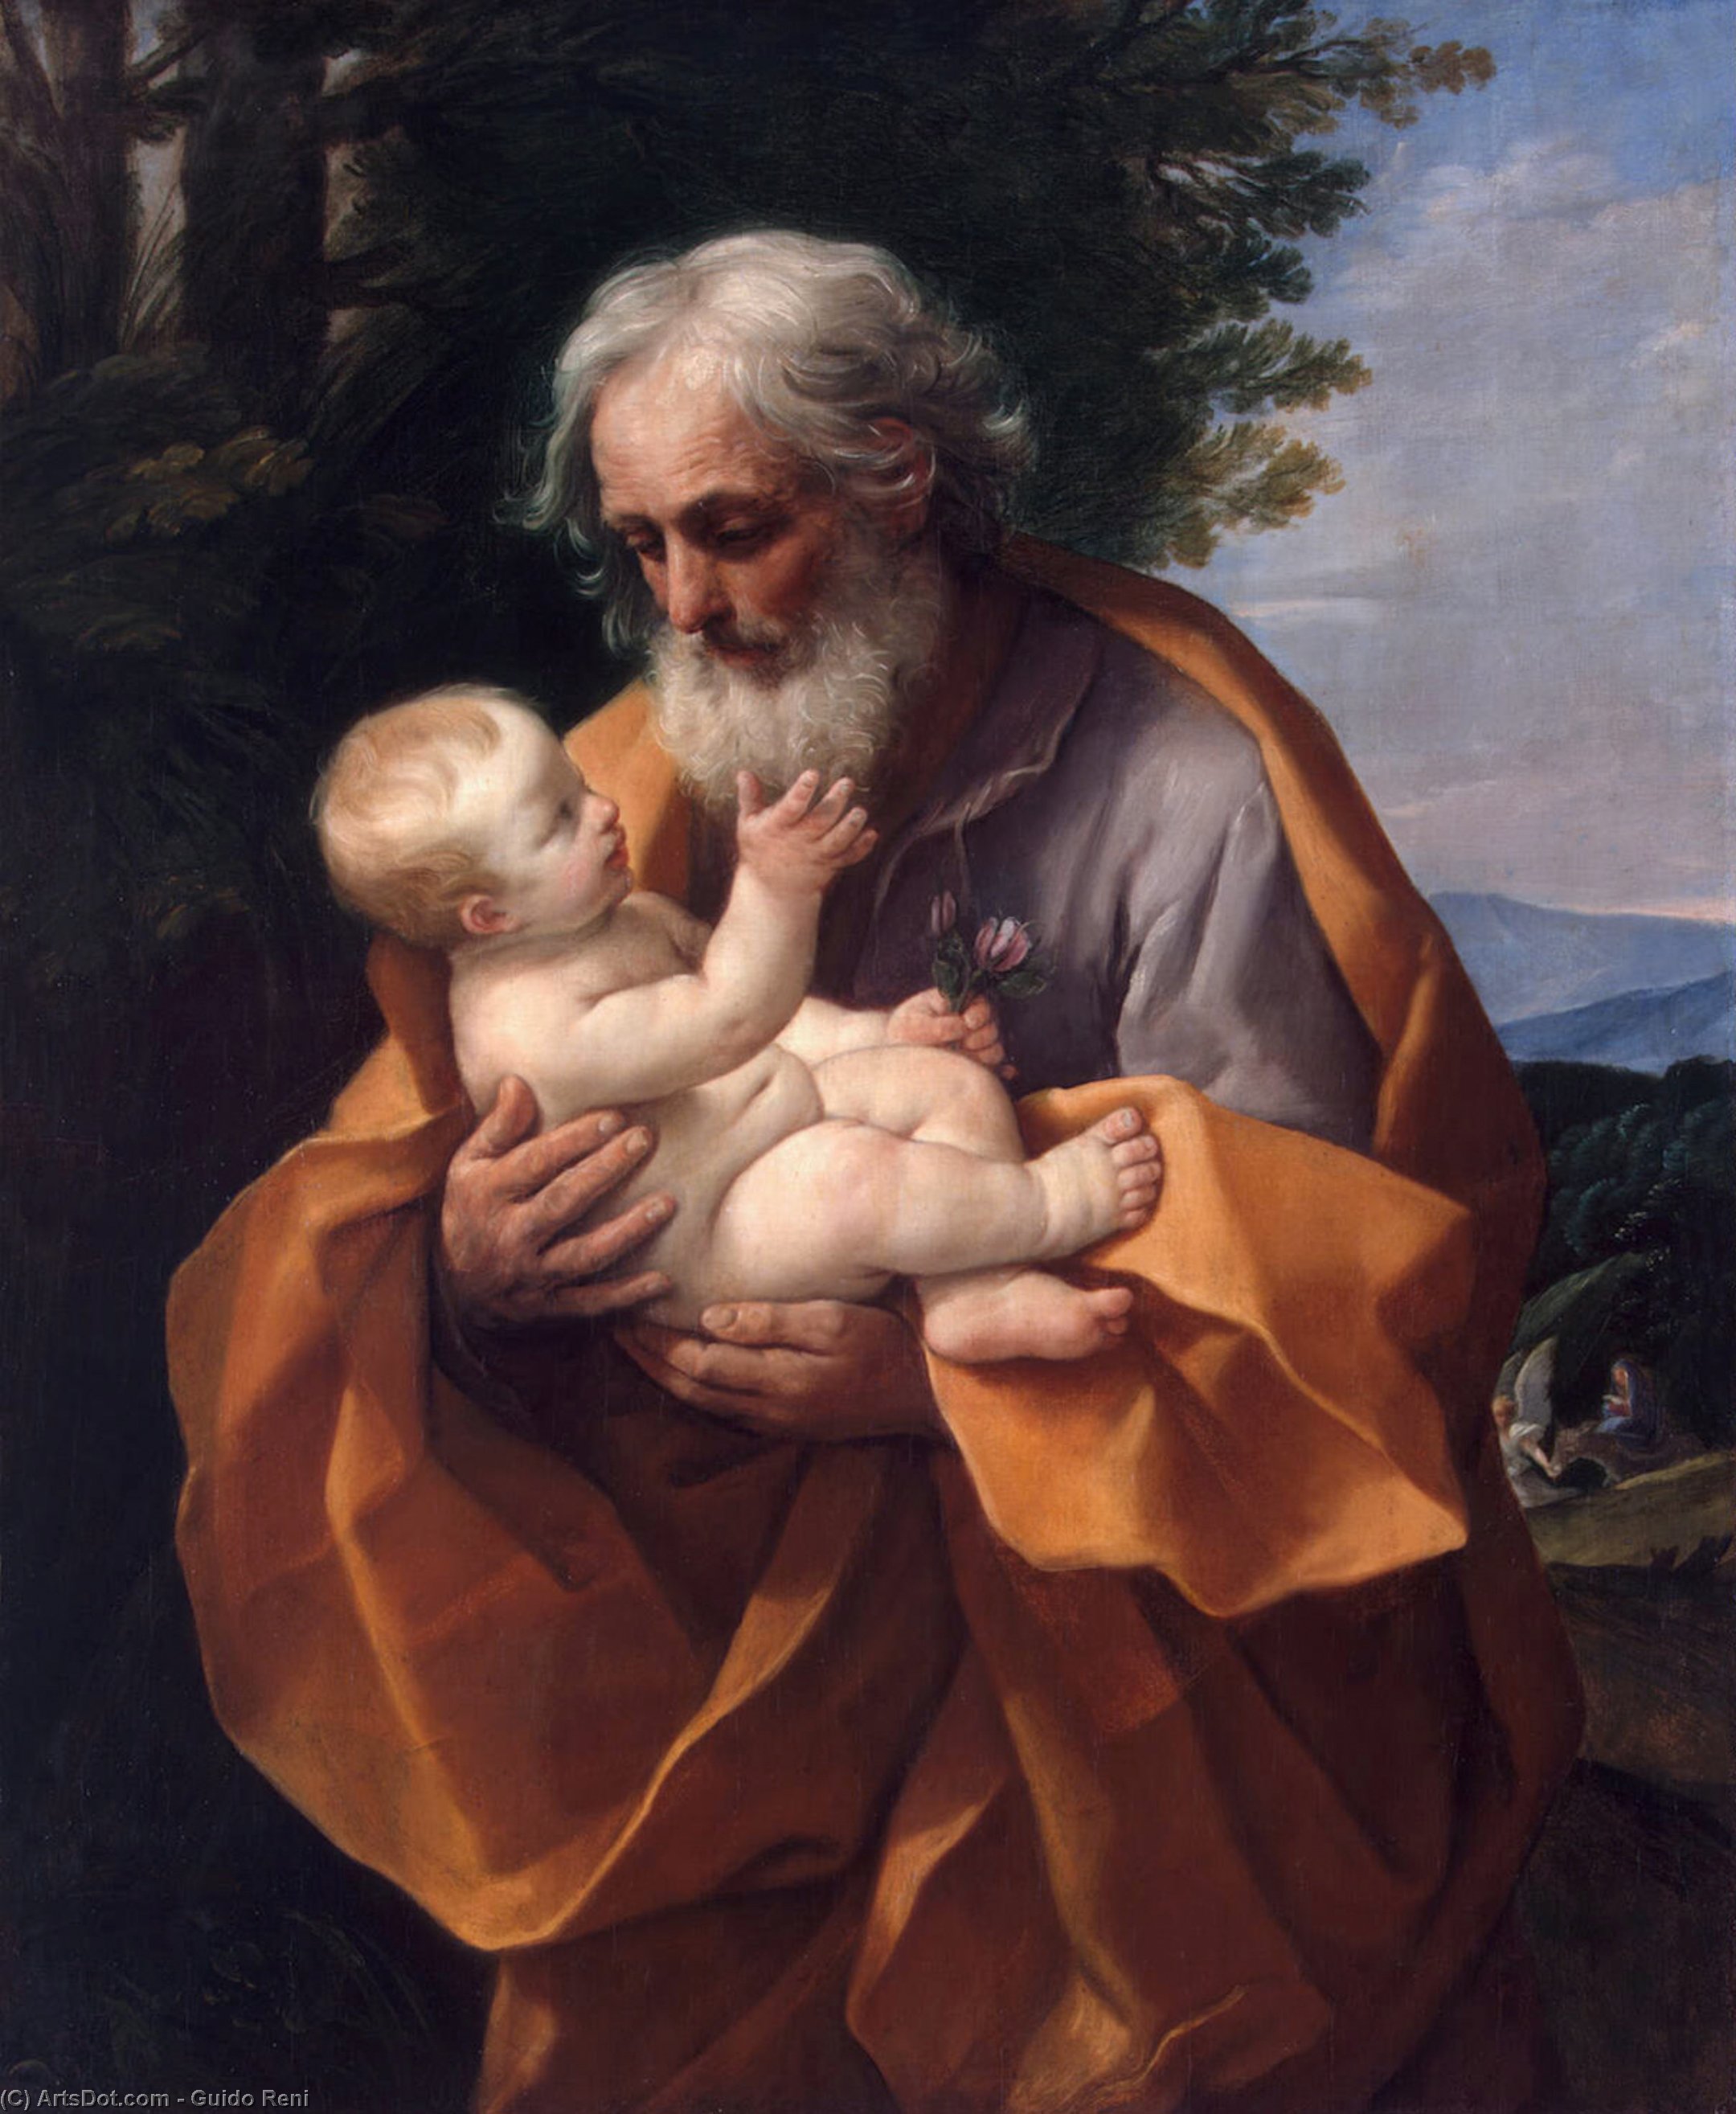 WikiOO.org - אנציקלופדיה לאמנויות יפות - ציור, יצירות אמנות Reni Guido (Le Guide) - St Joseph with the Infant Jesus